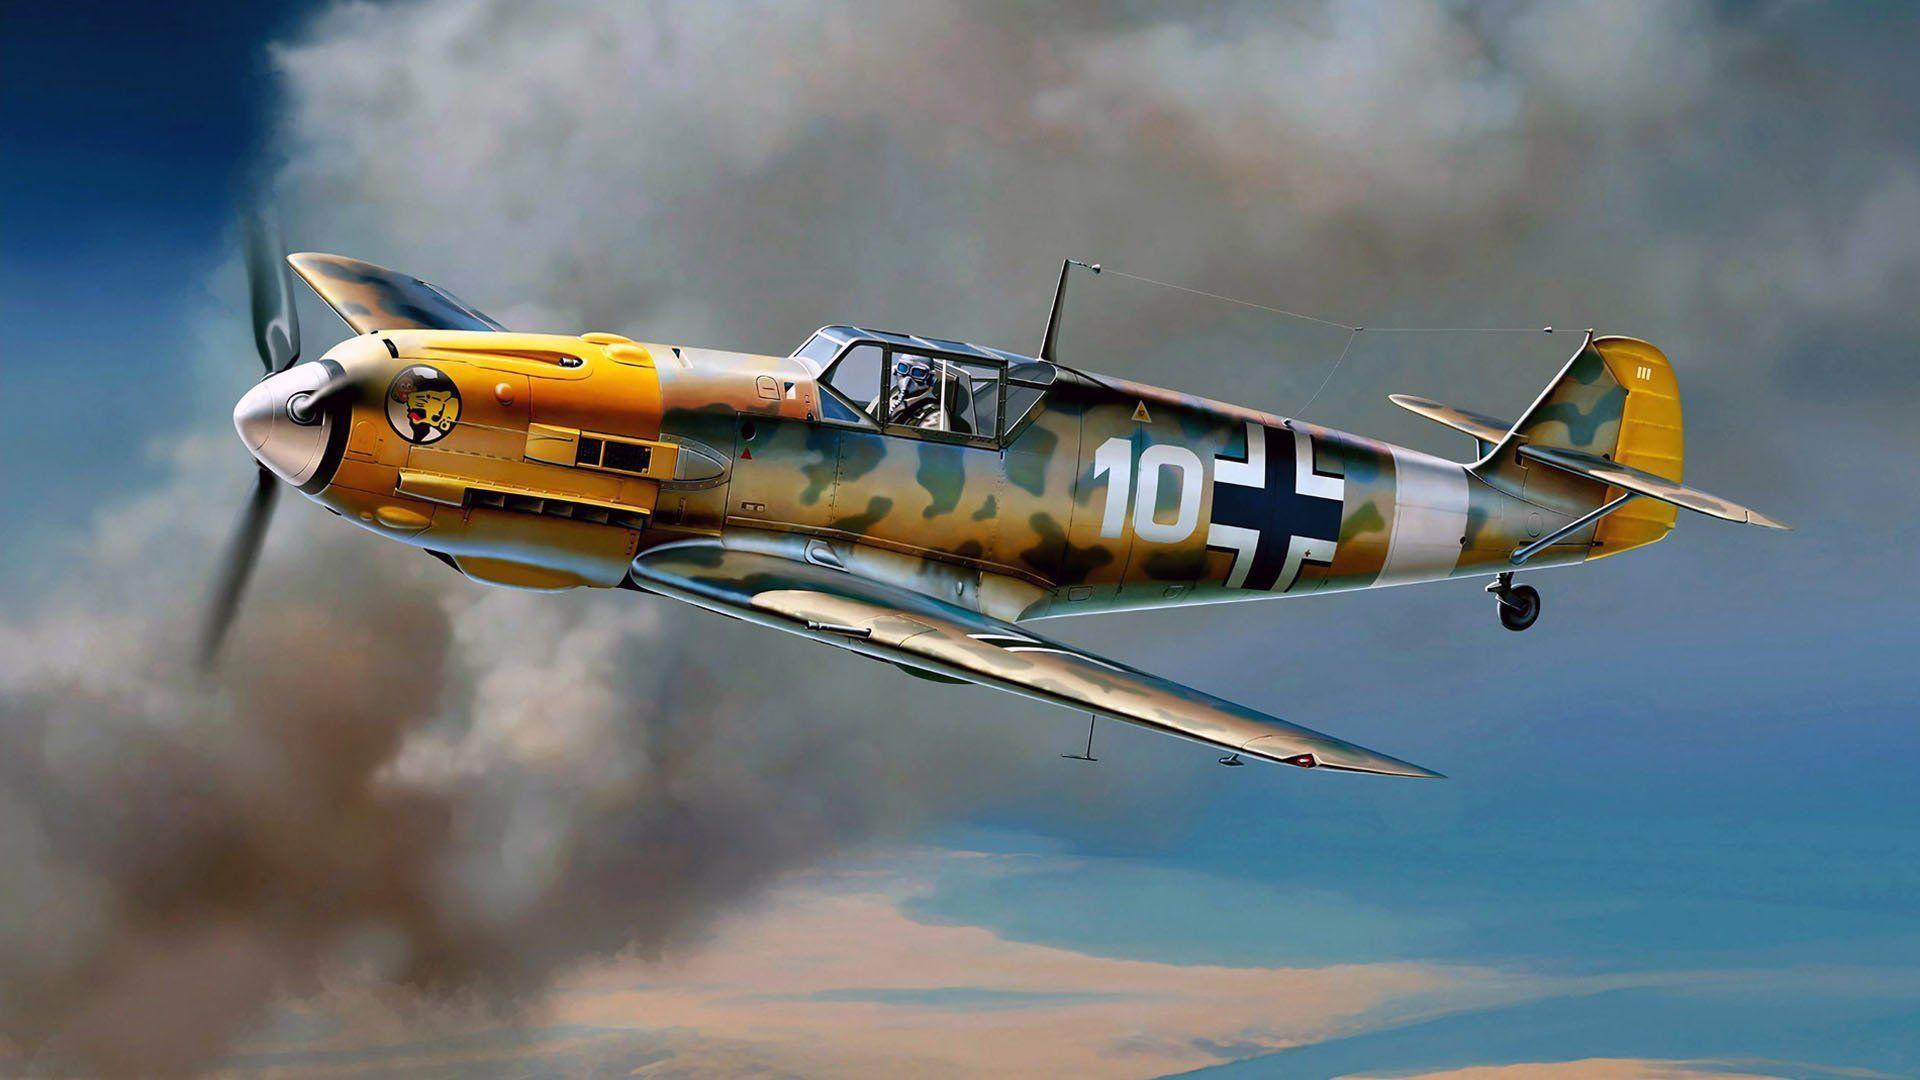 Messerschmitt Bf 109 HD Wallpaper and Background Image